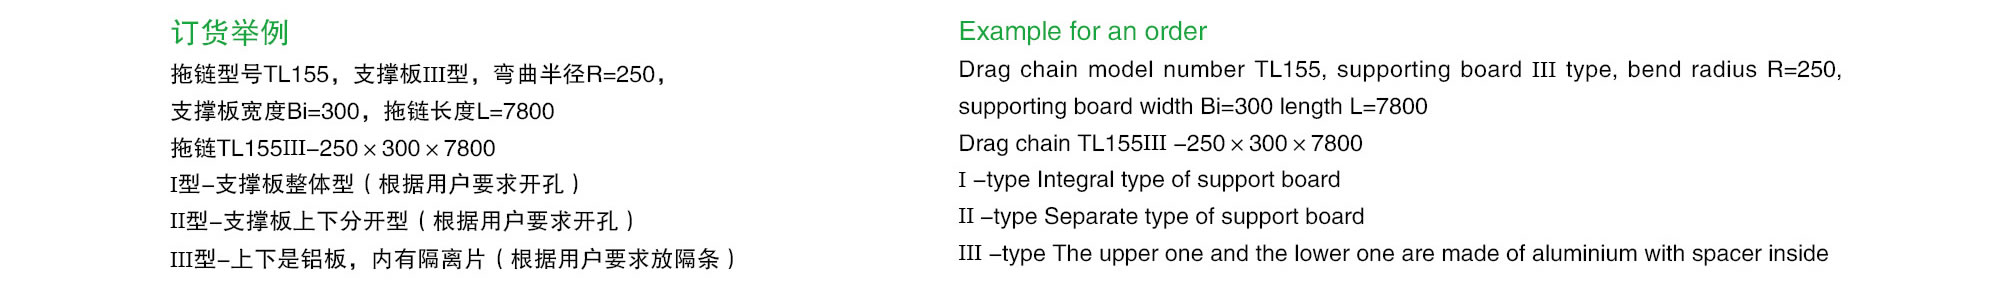 TL155型钢制拖链（桥式）订货举例示意图